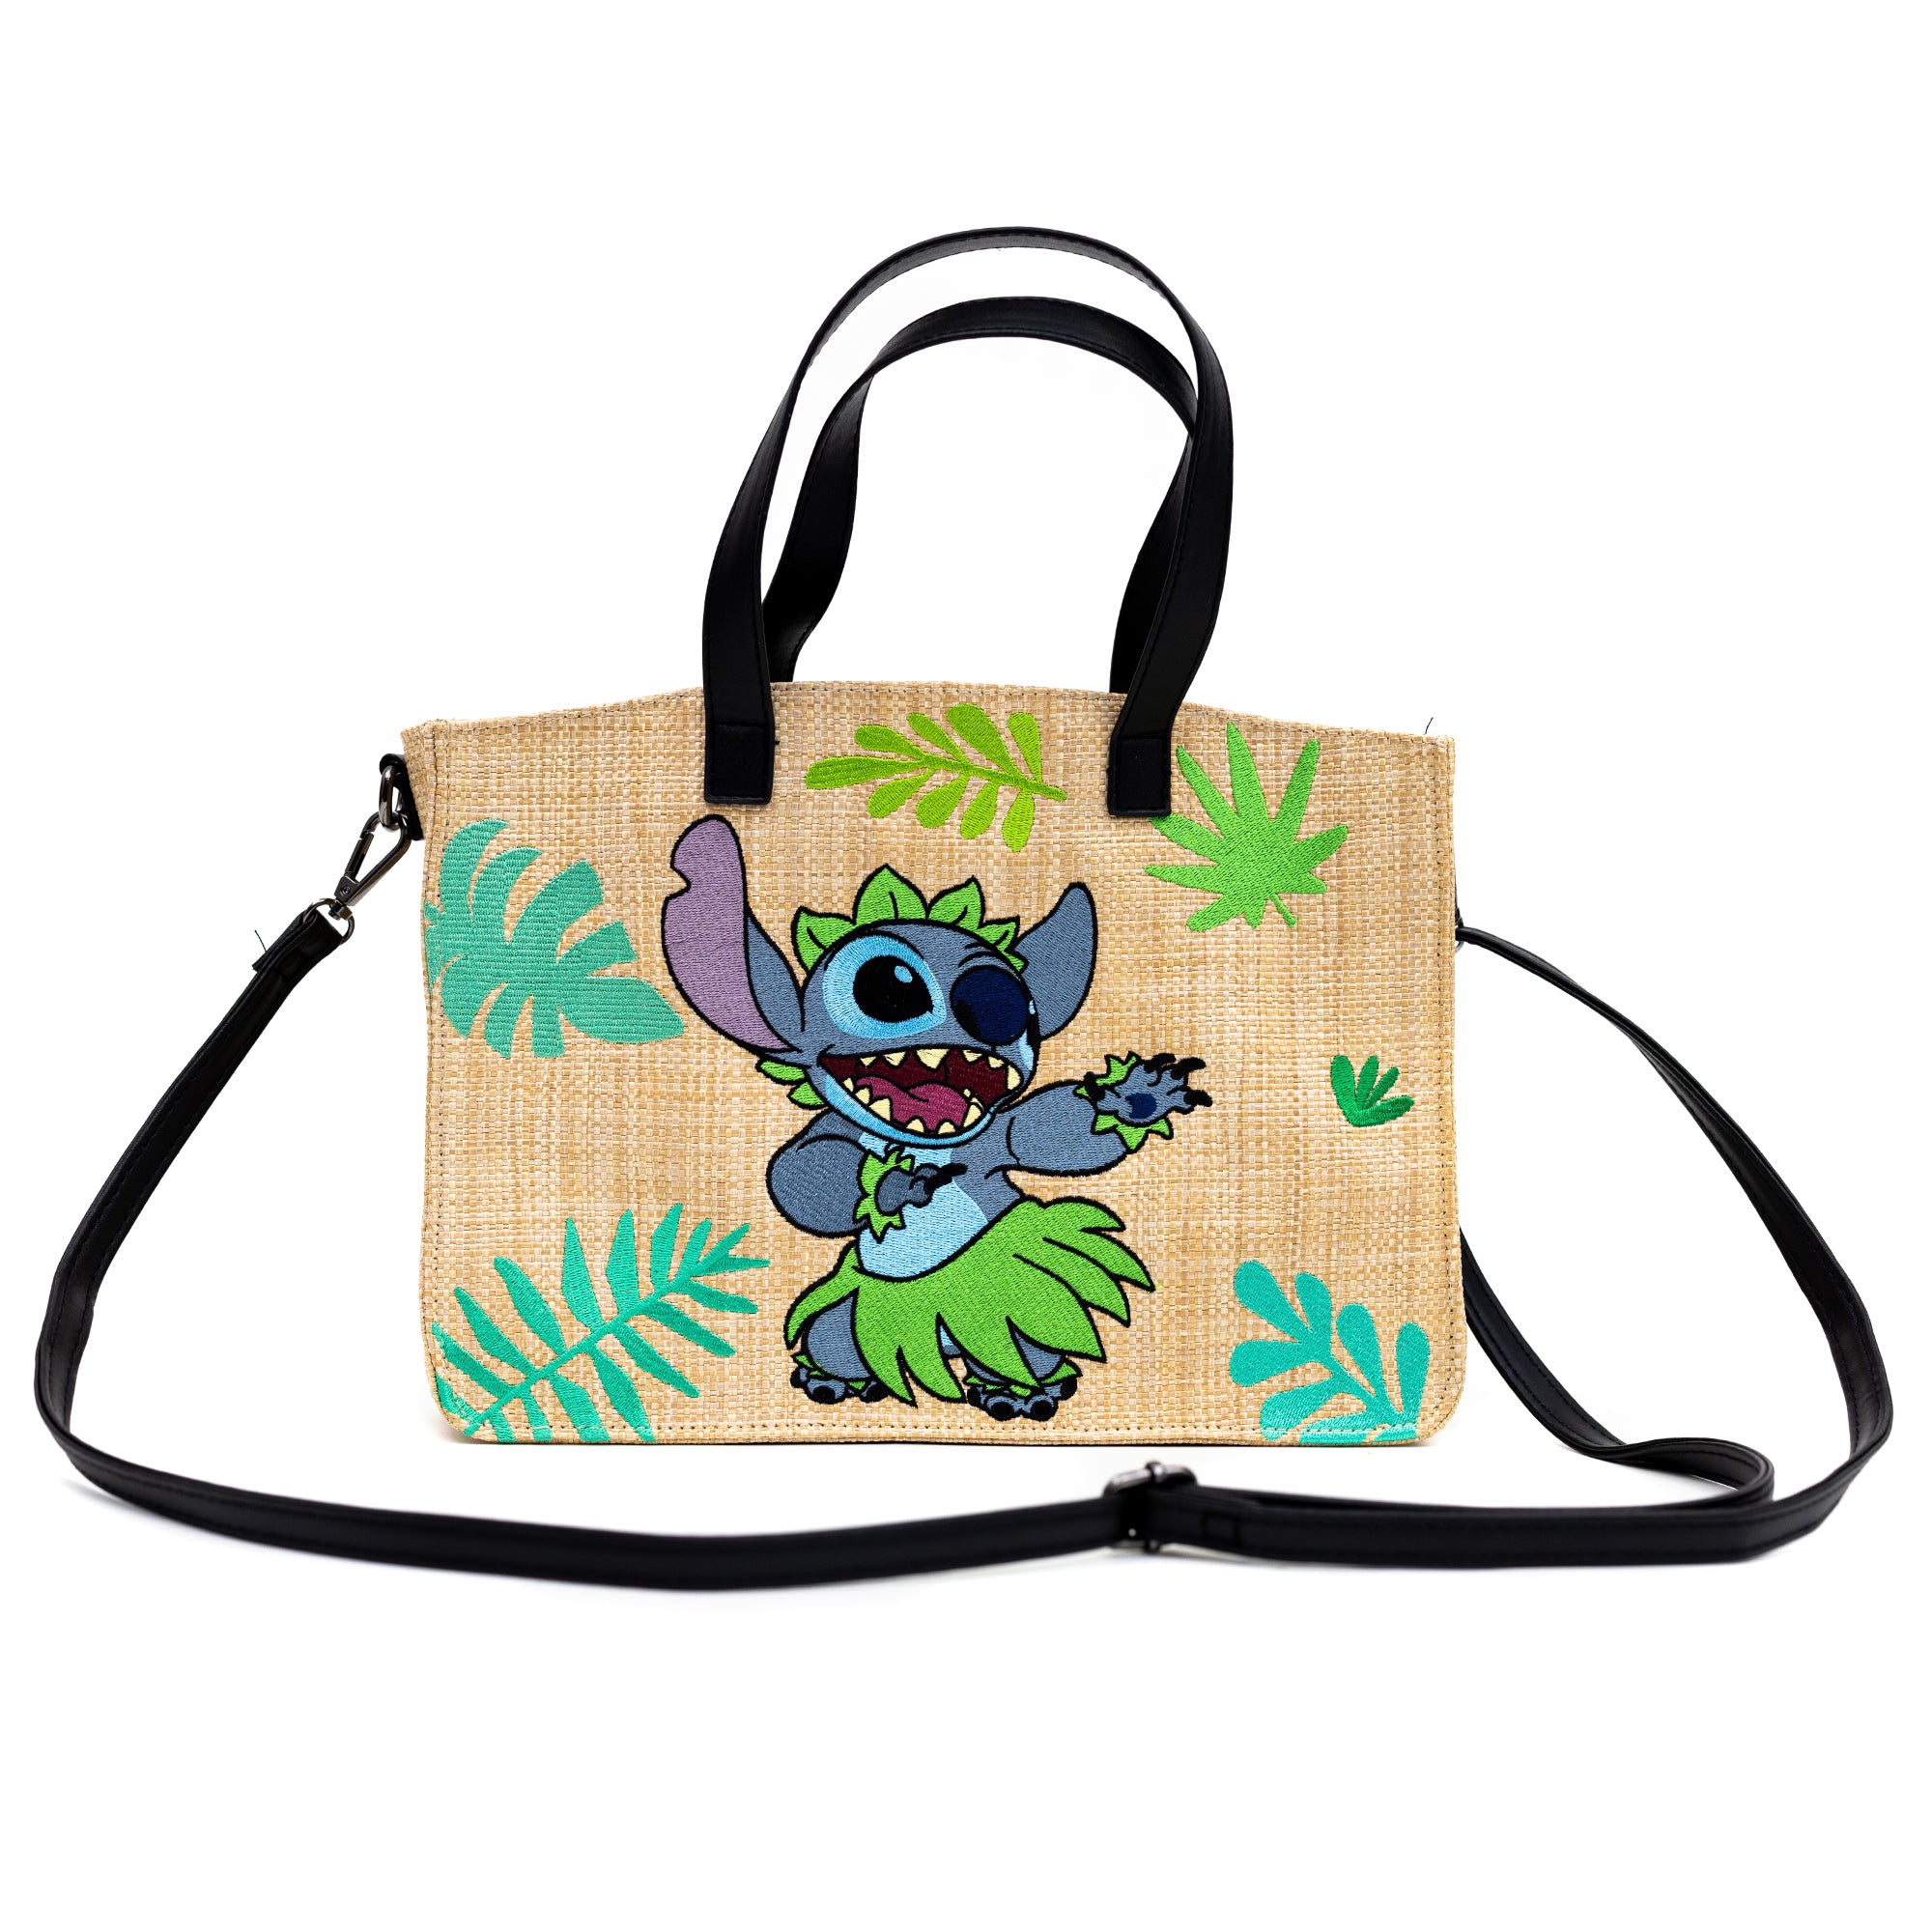 Stitch Disney Crossbody Bag Purse